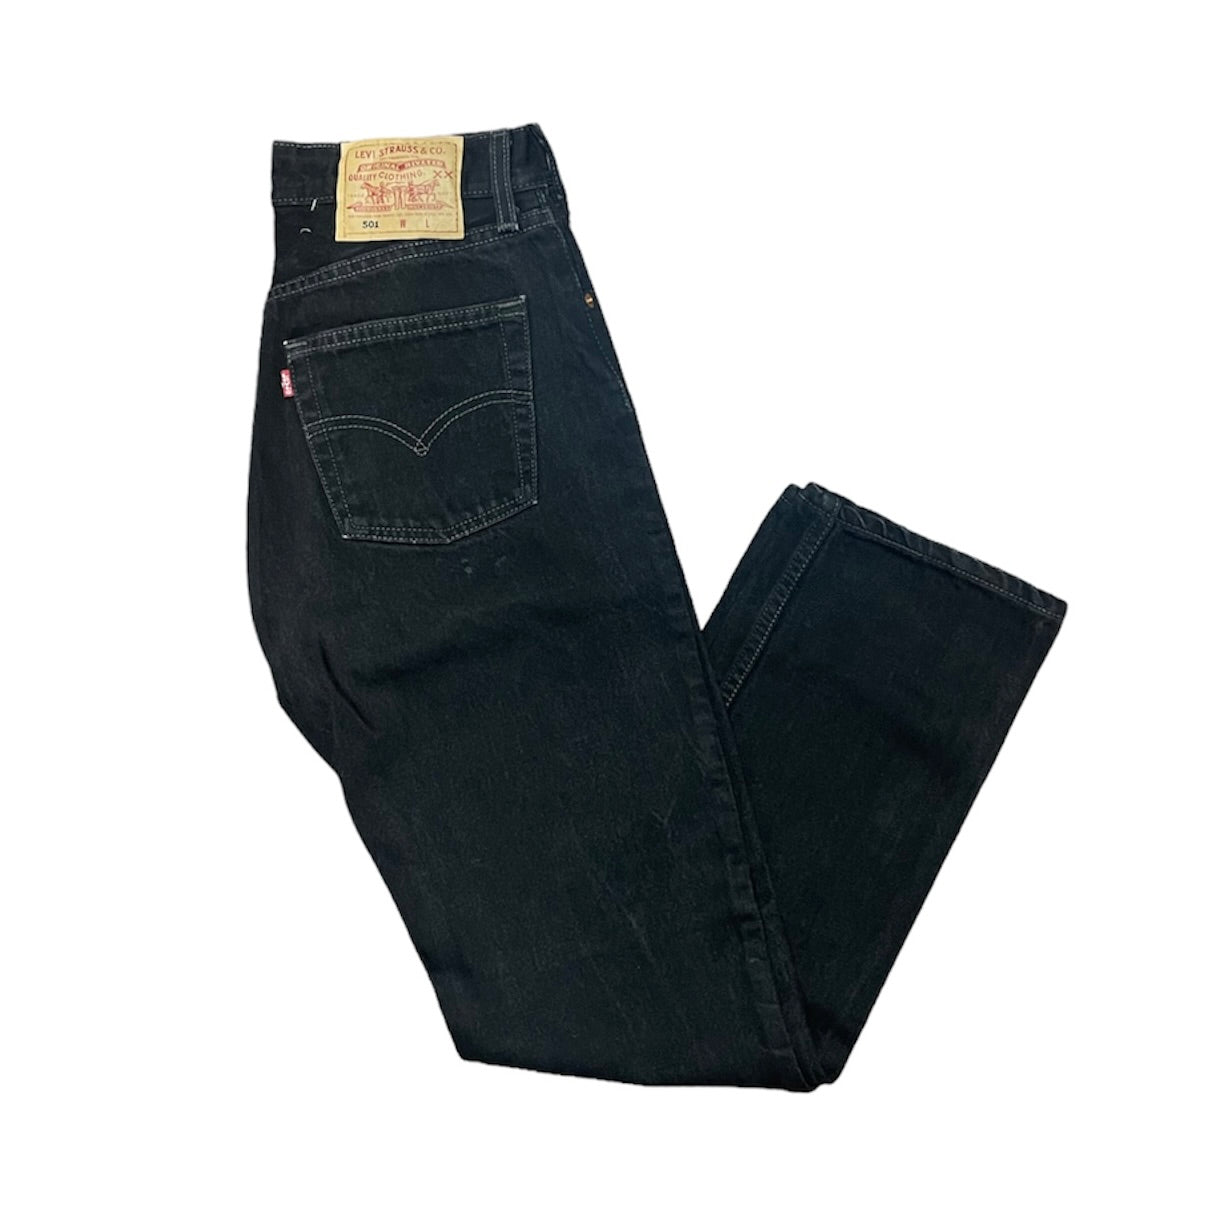 Vintage Levis 501 Black Jeans (W)